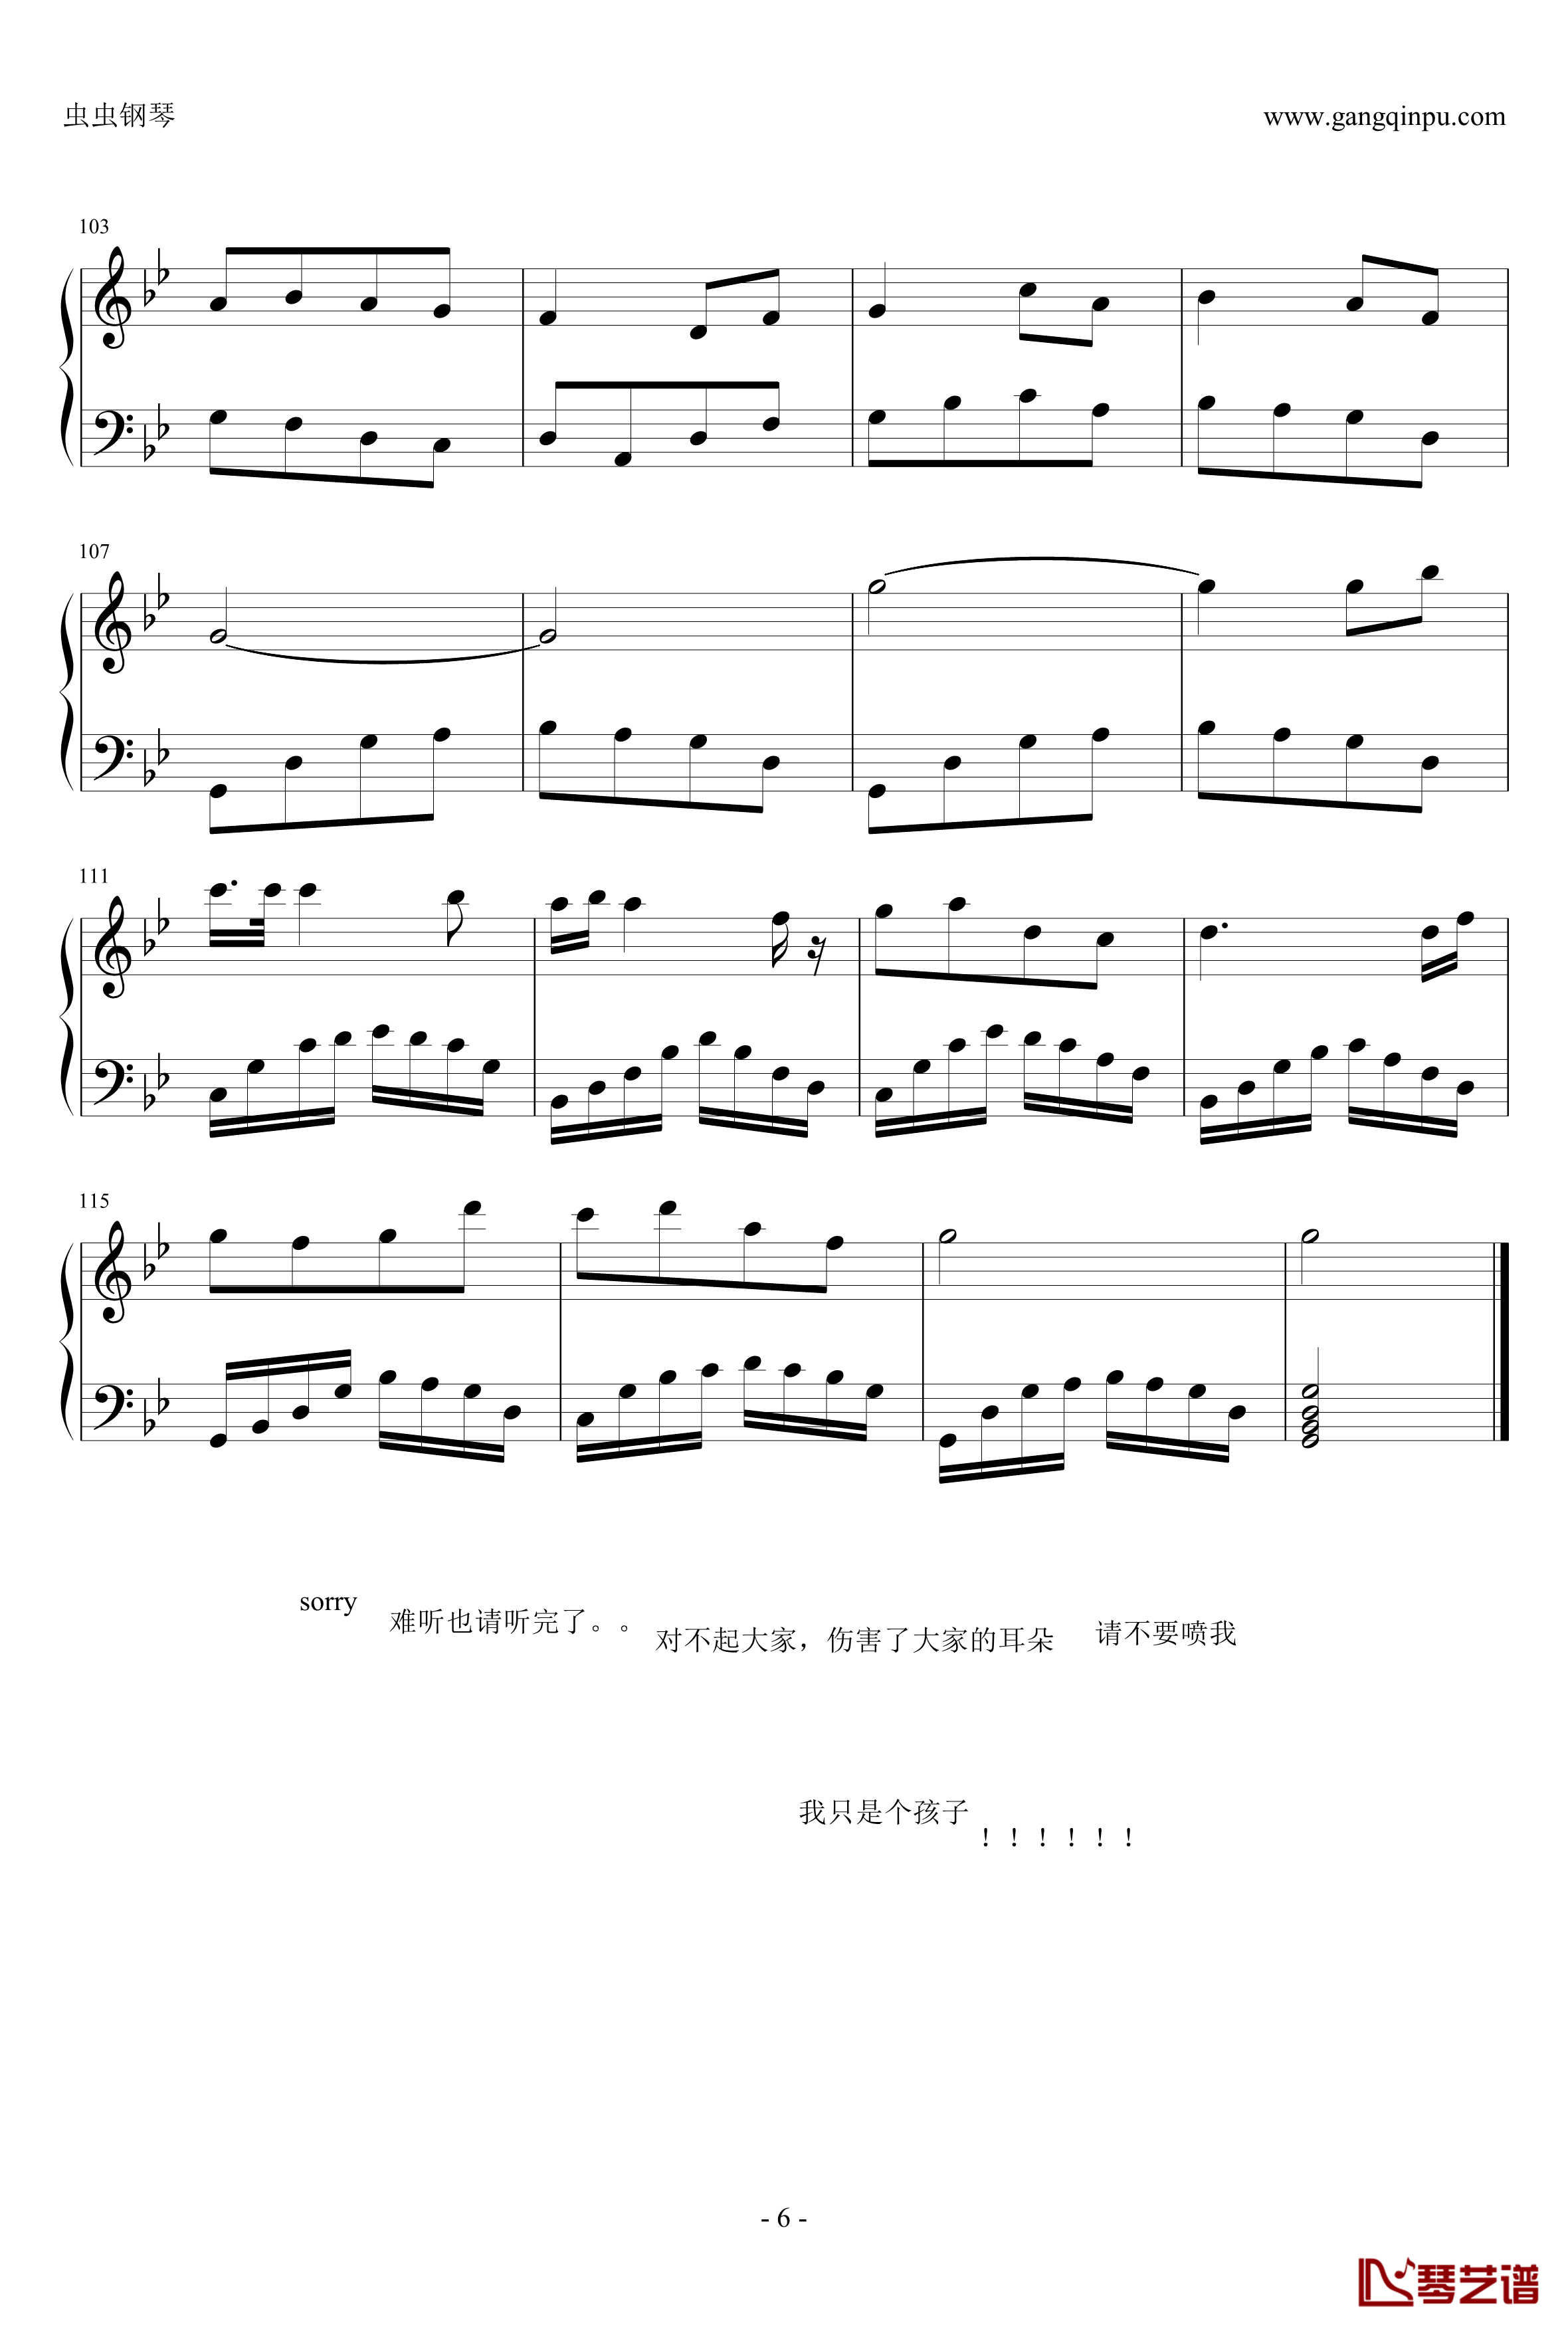 カラス钢琴谱-18918155343